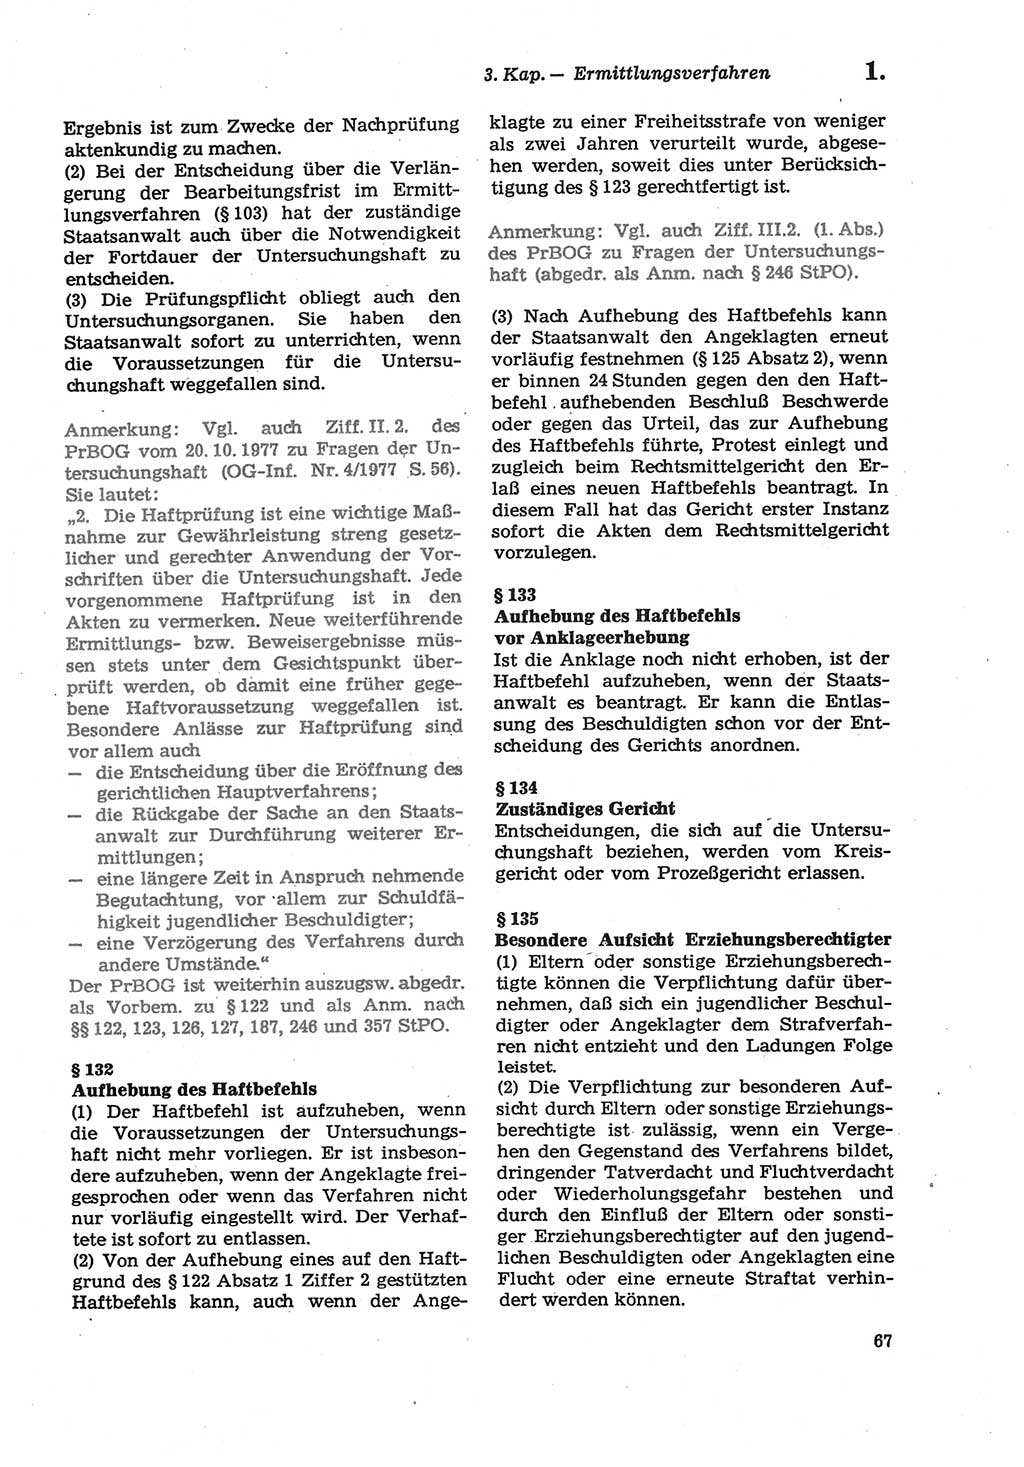 Strafprozeßordnung (StPO) der Deutschen Demokratischen Republik (DDR) sowie angrenzende Gesetze und Bestimmungen 1979, Seite 67 (StPO DDR Ges. Best. 1979, S. 67)